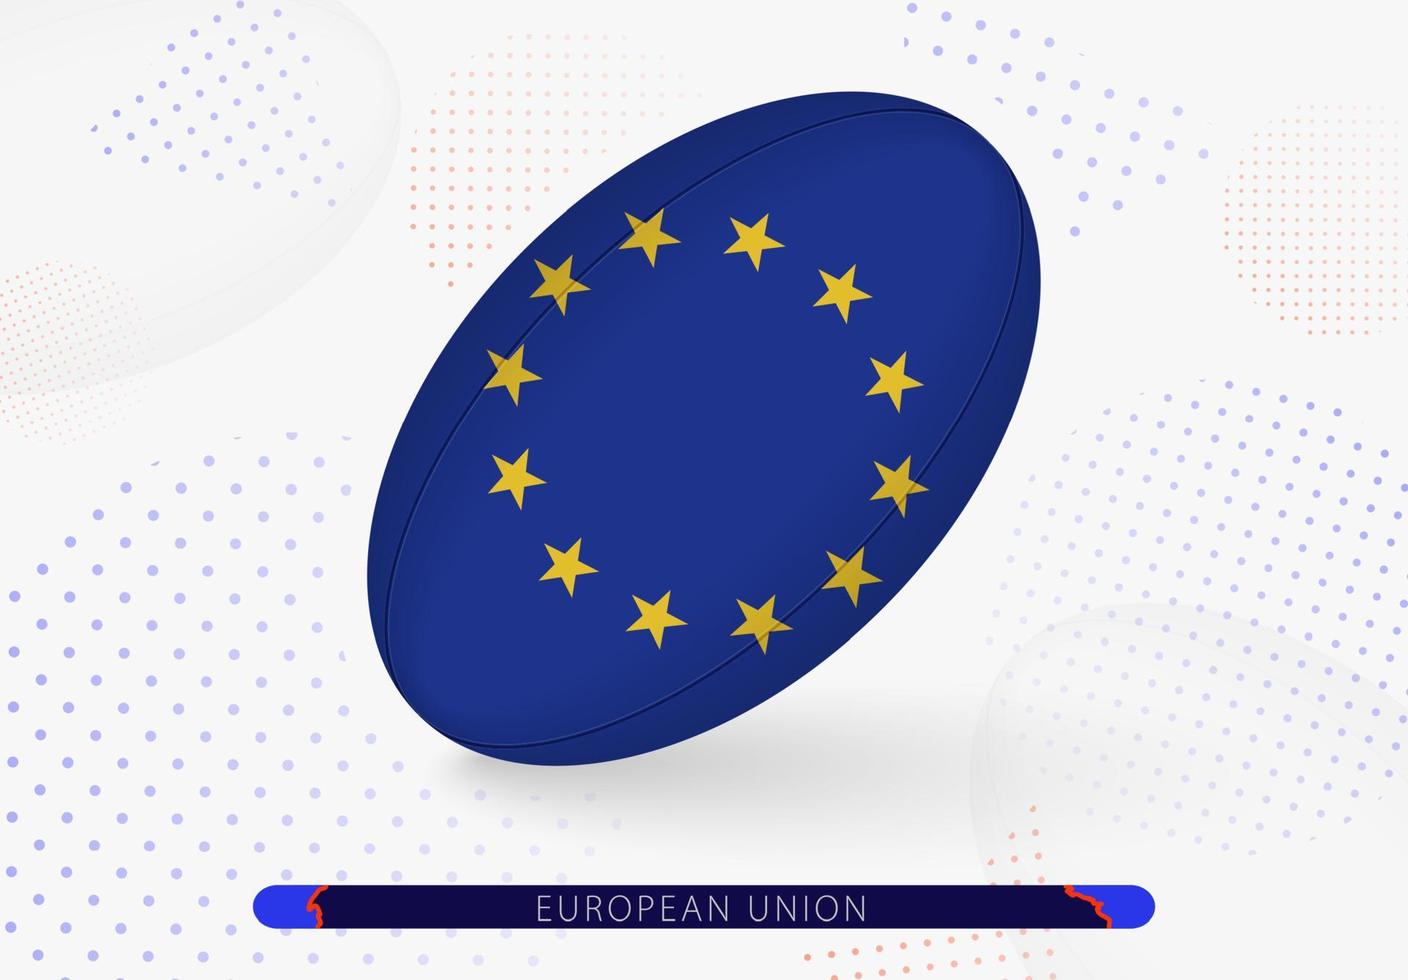 ballon de rugby avec le drapeau de l'union européenne dessus. équipement pour l'équipe de rugby de l'union européenne. vecteur